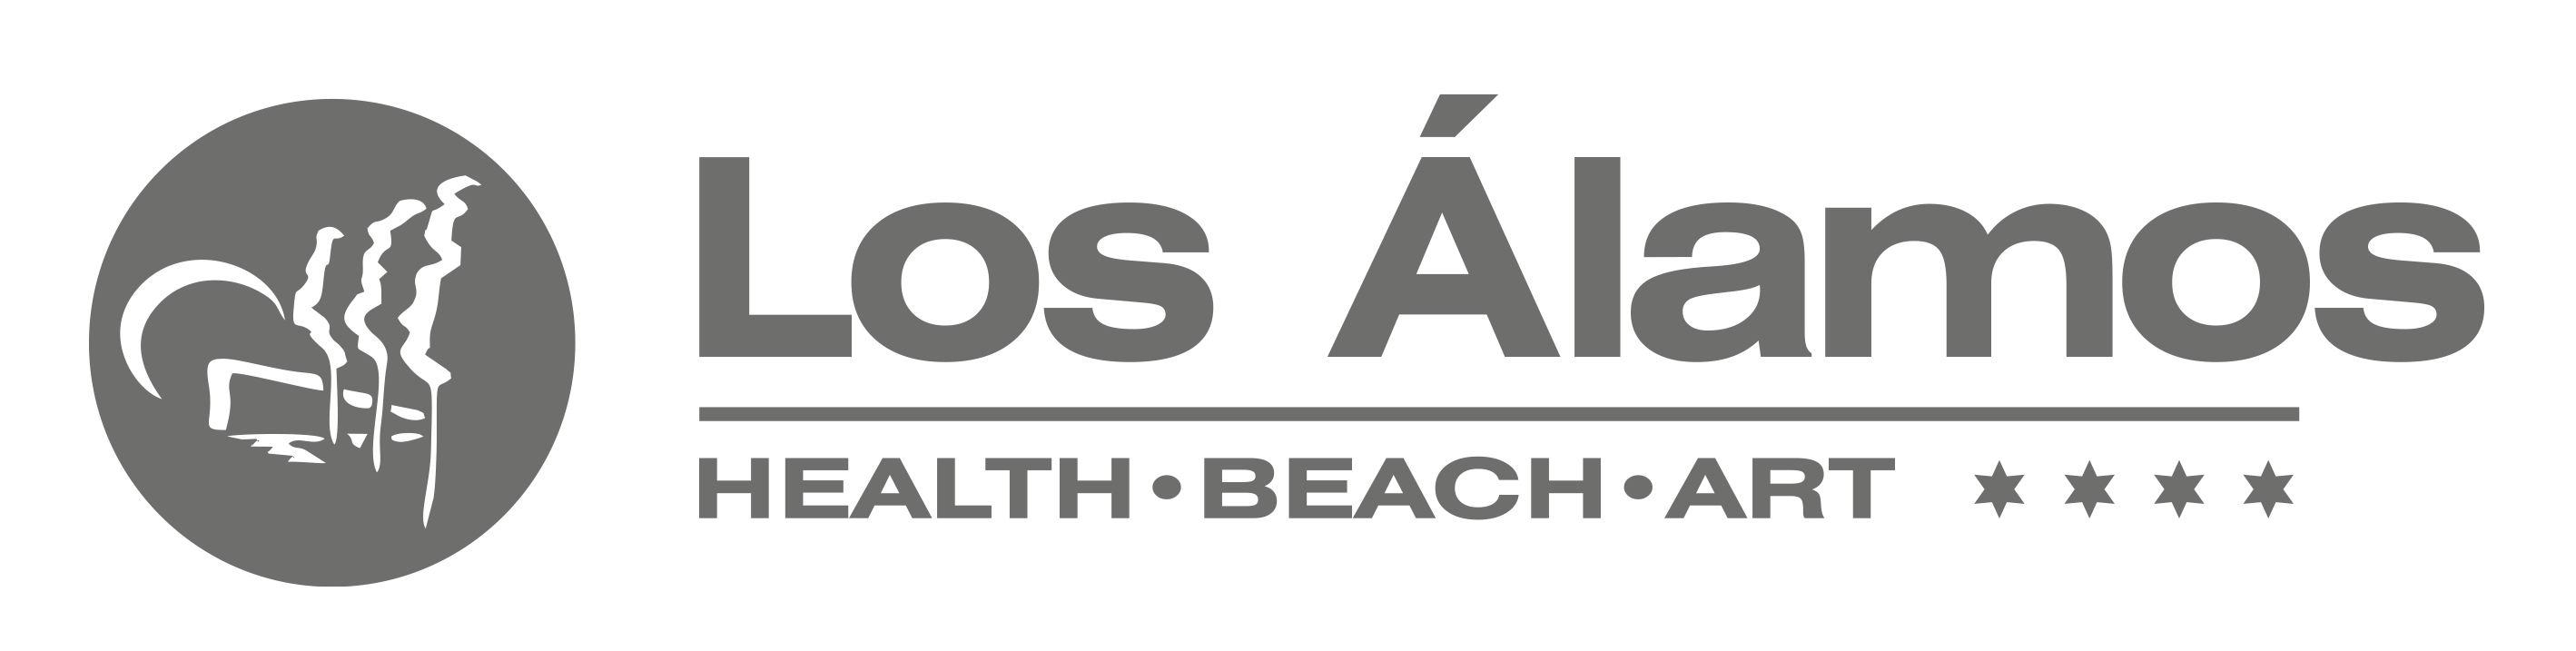 een zwart-wit logo voor los alamos health beach art